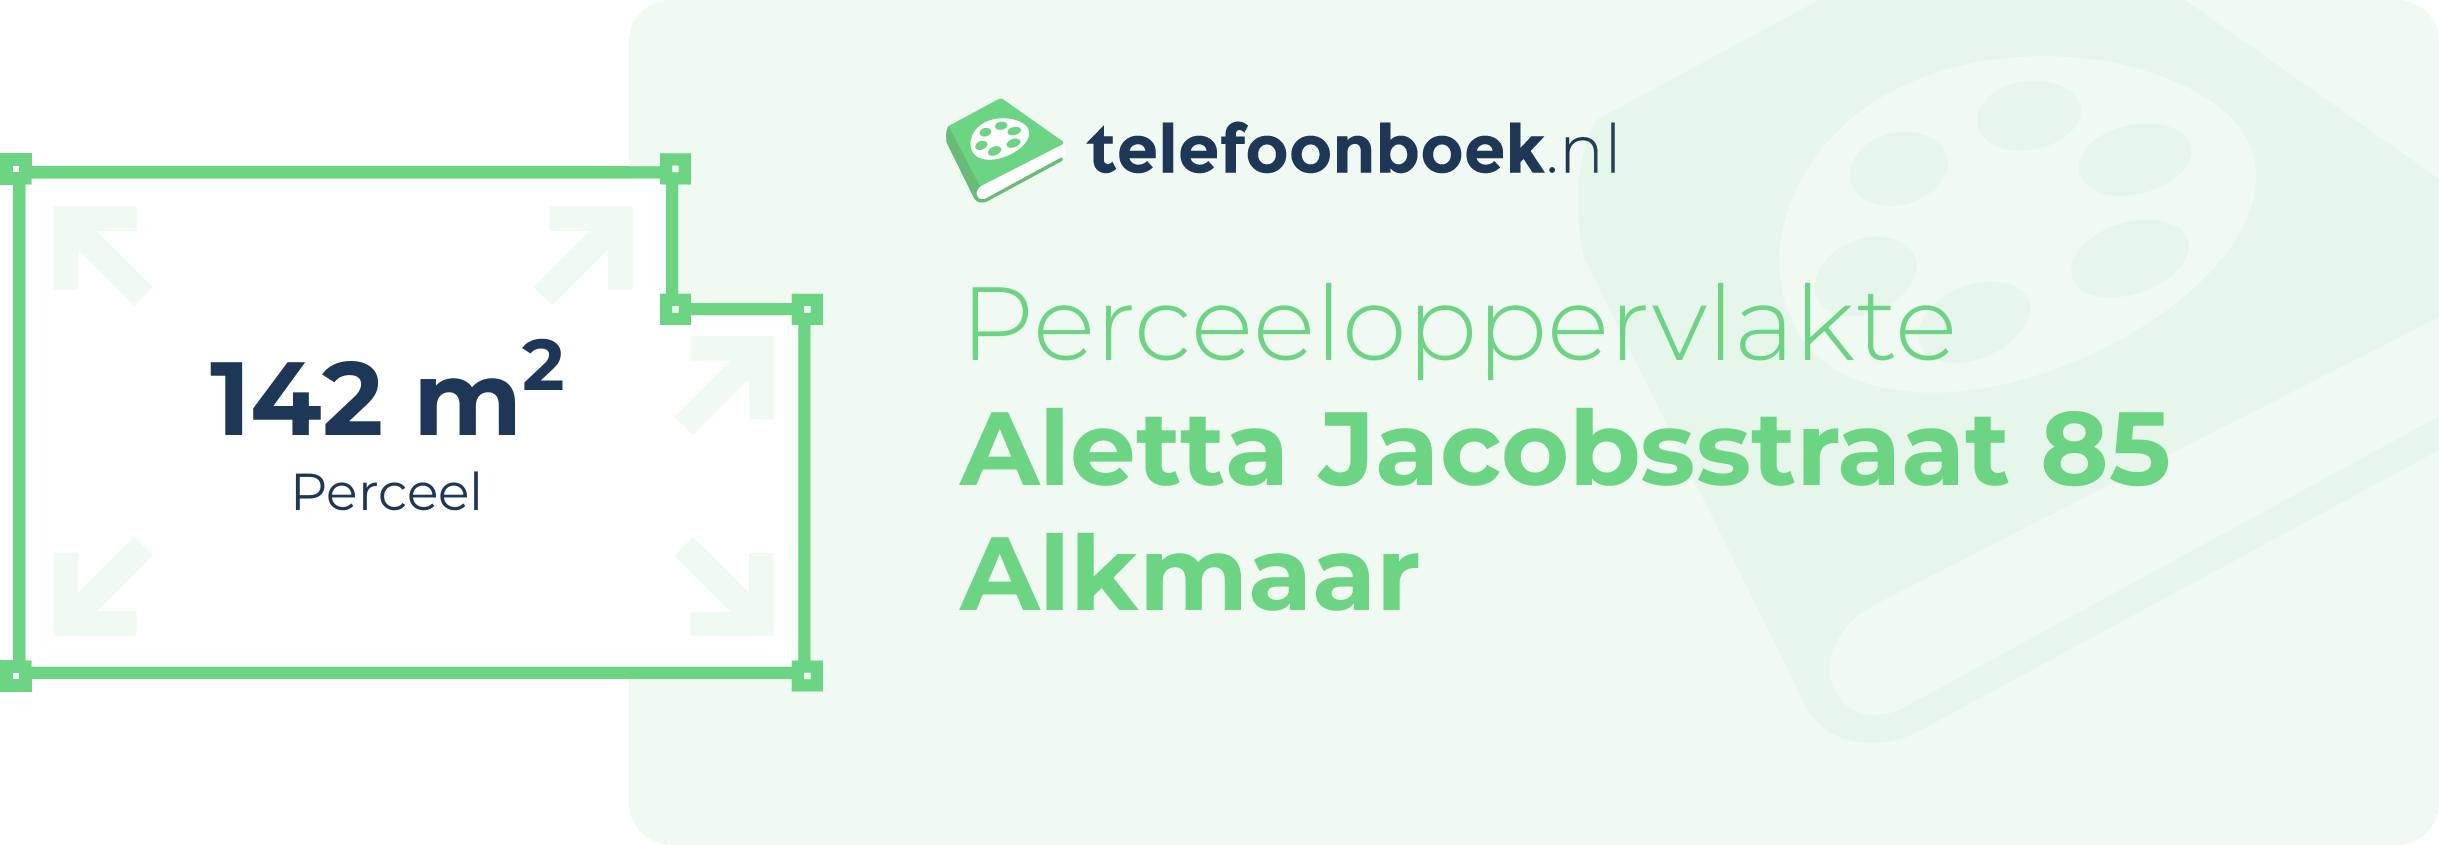 Perceeloppervlakte Aletta Jacobsstraat 85 Alkmaar